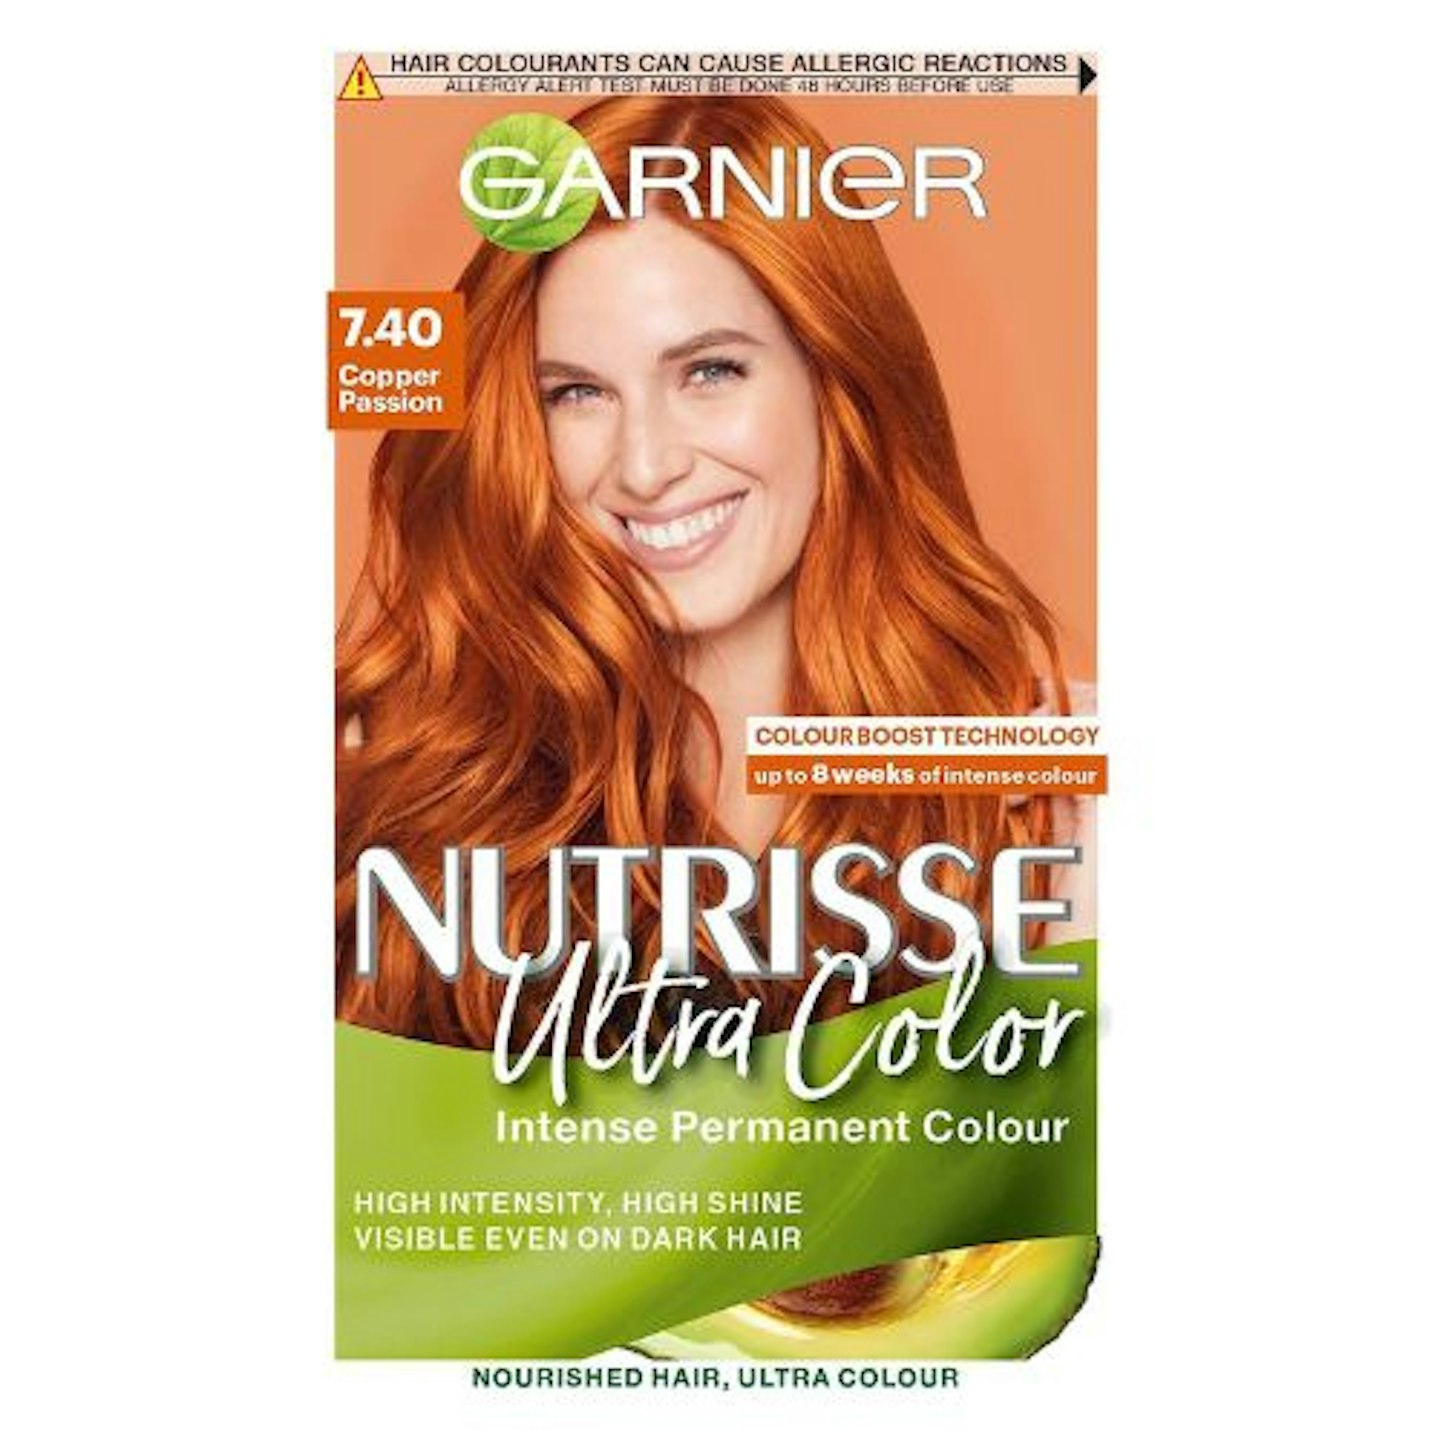 Garnier Nutrisse Ultra Color, Permanent Hair Dye, 7.40 Copper Passion